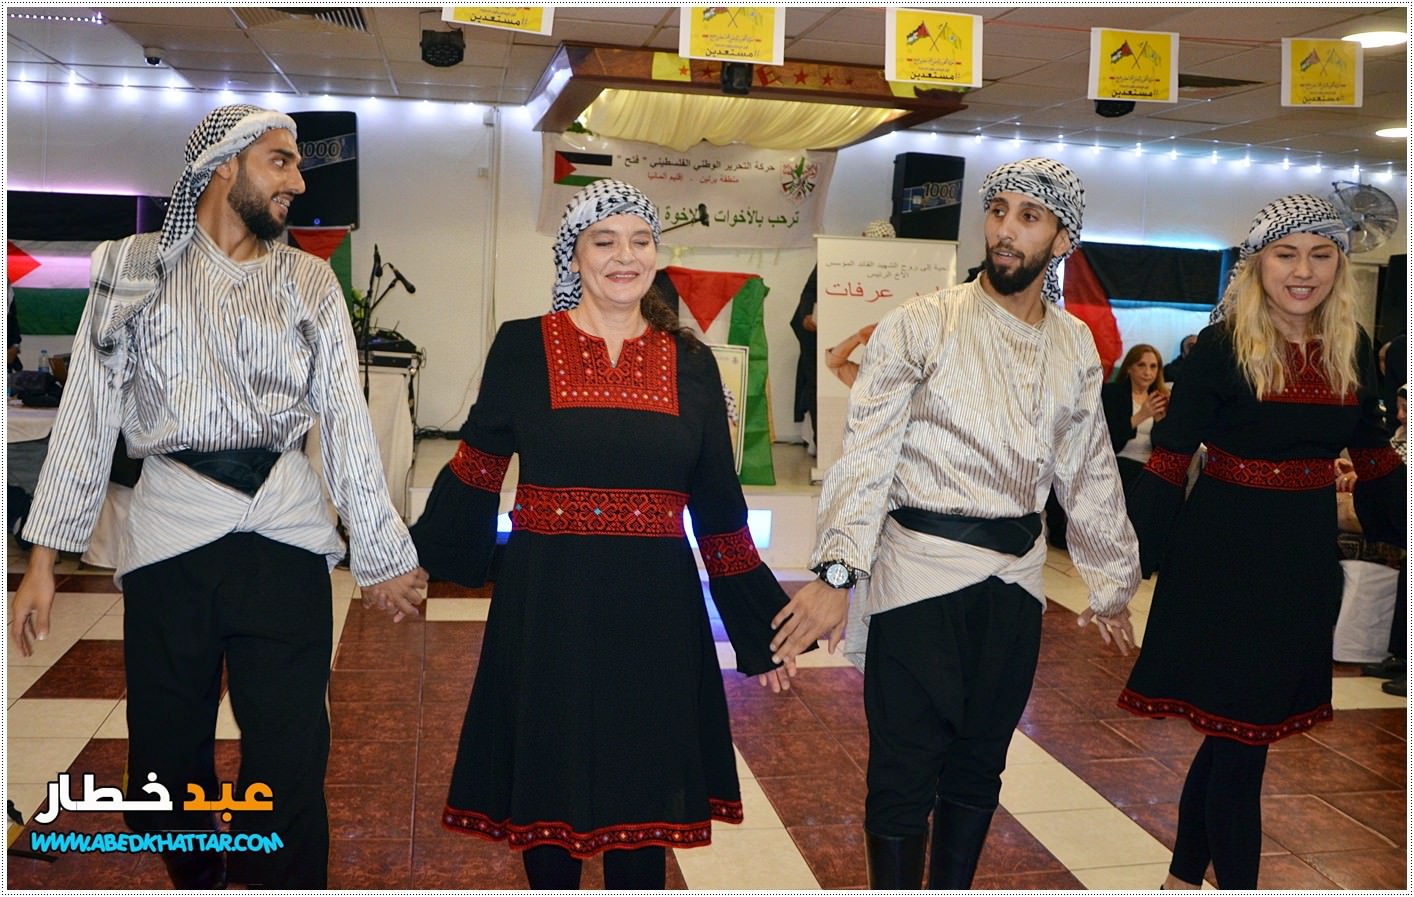 فرقة موريا للدبكة الشعبية الفلسطينية